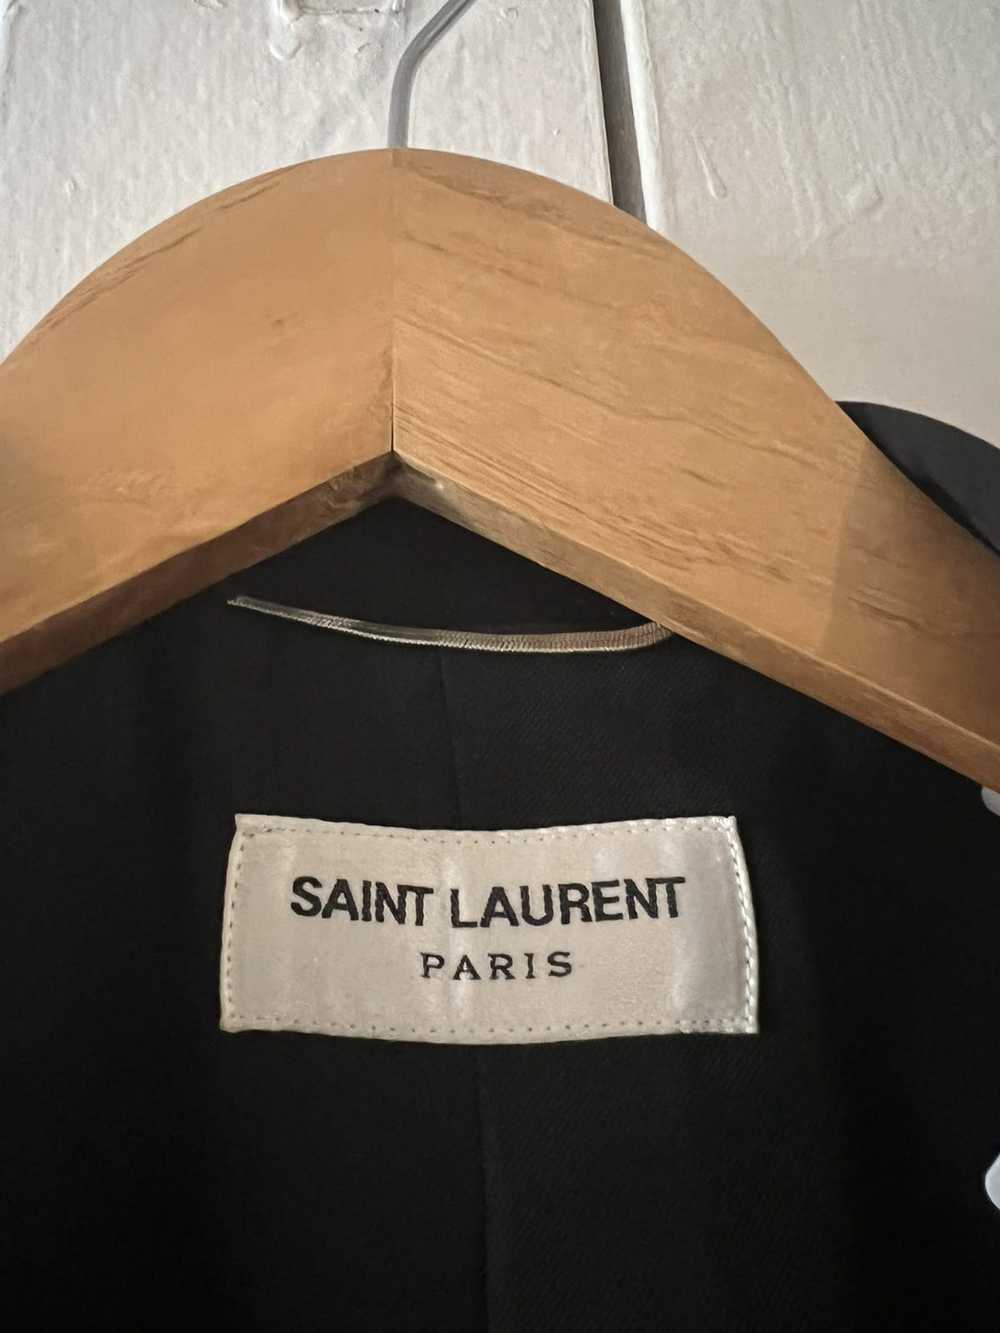 Saint Laurent Paris SS16 Rare Surf sound blazer - image 5